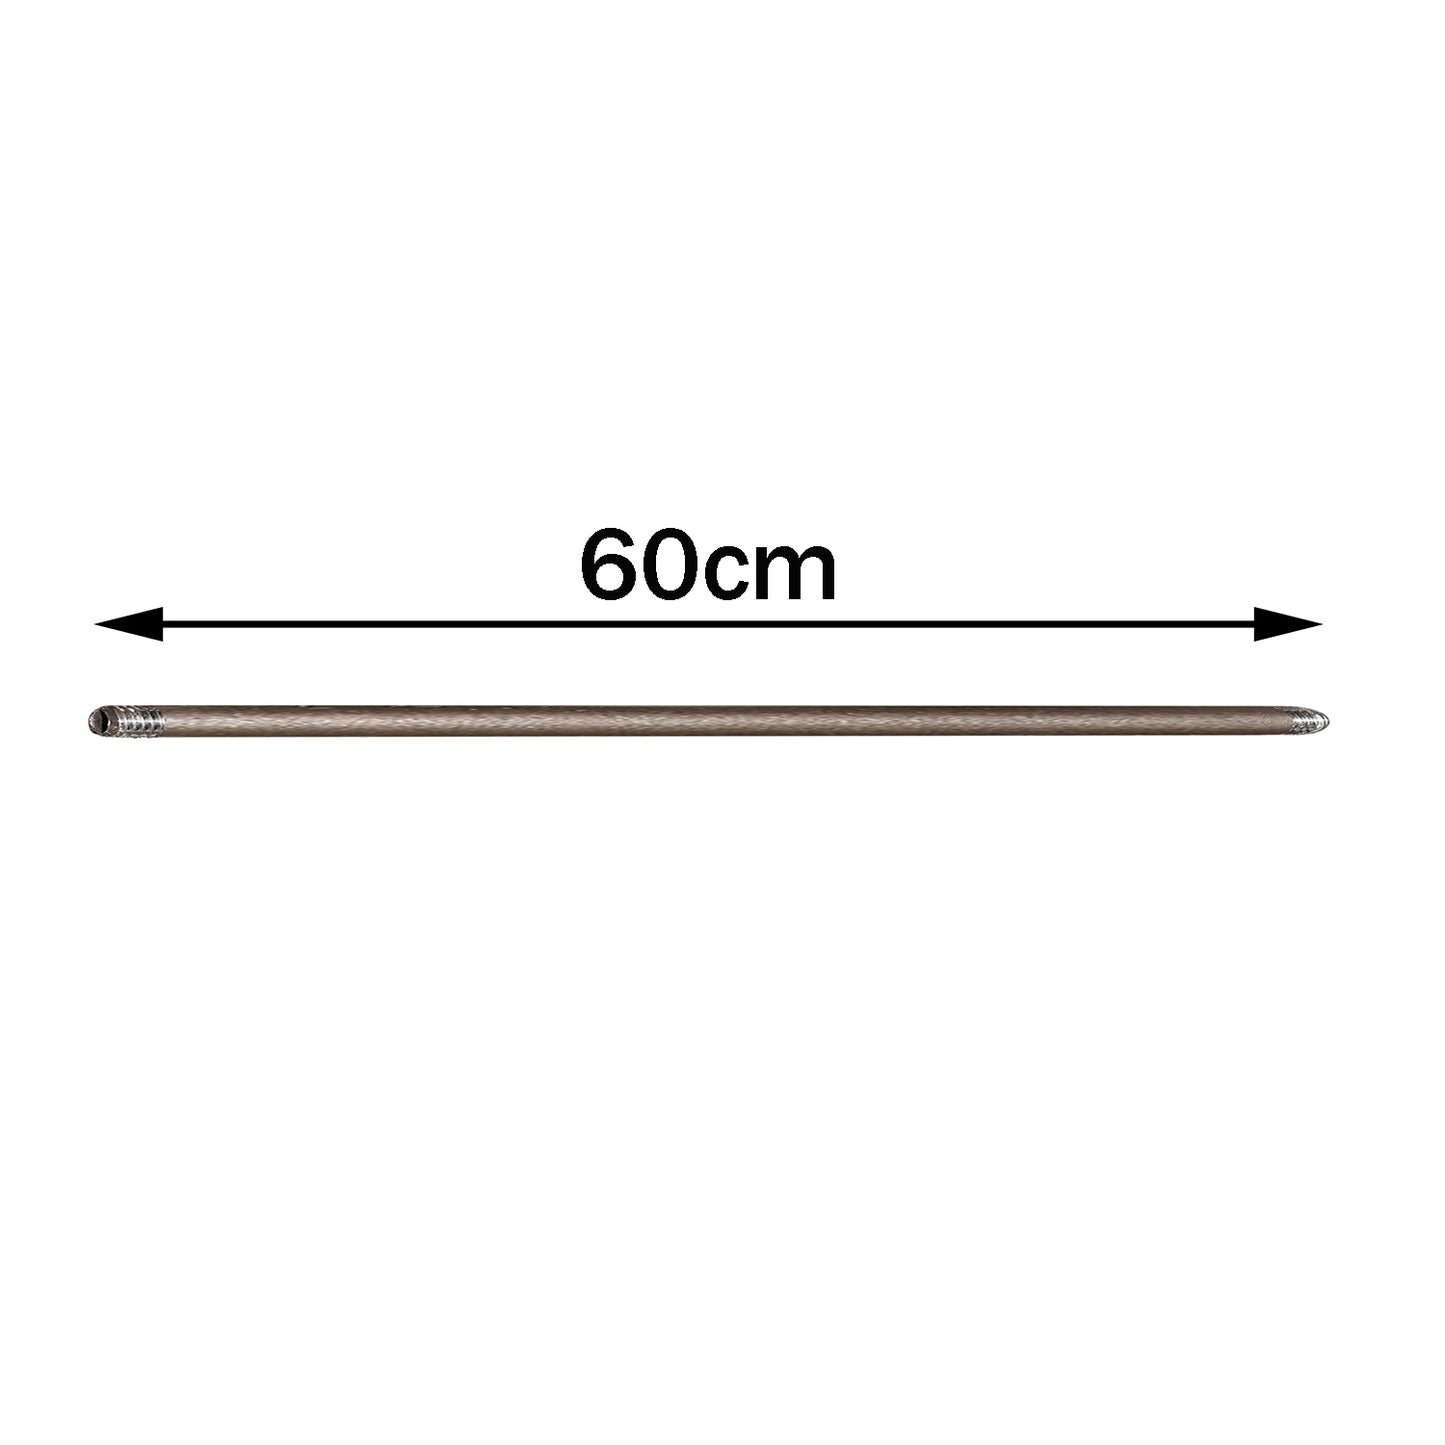 Rohrbeleuchtungszubehör Eisengewinderohr-60cm